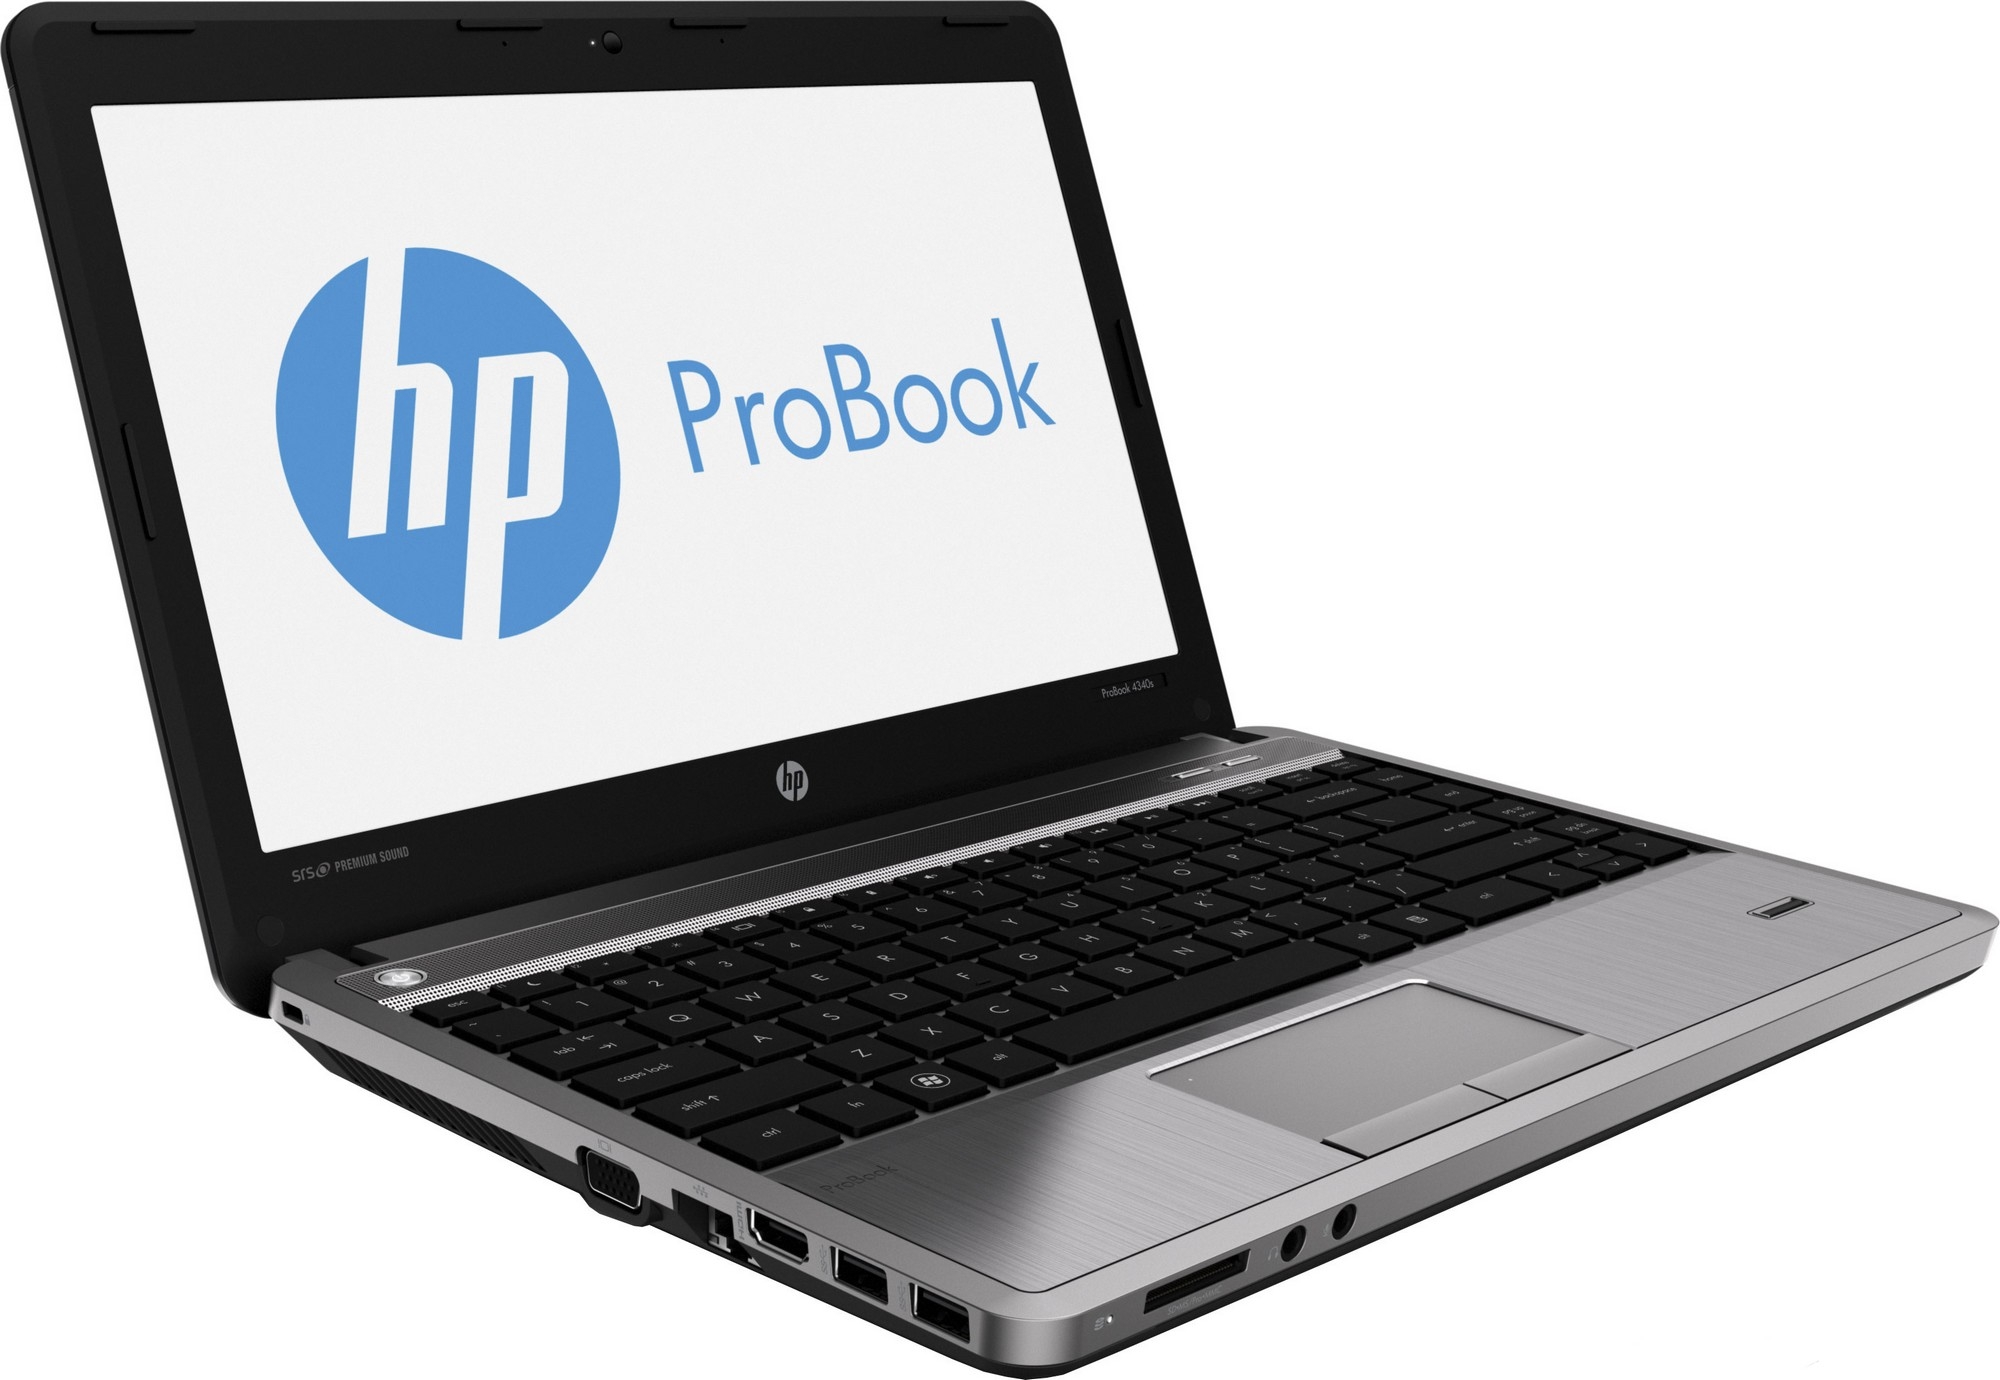 HP ProBook 4340s (C4Y05EA) - зображення 1